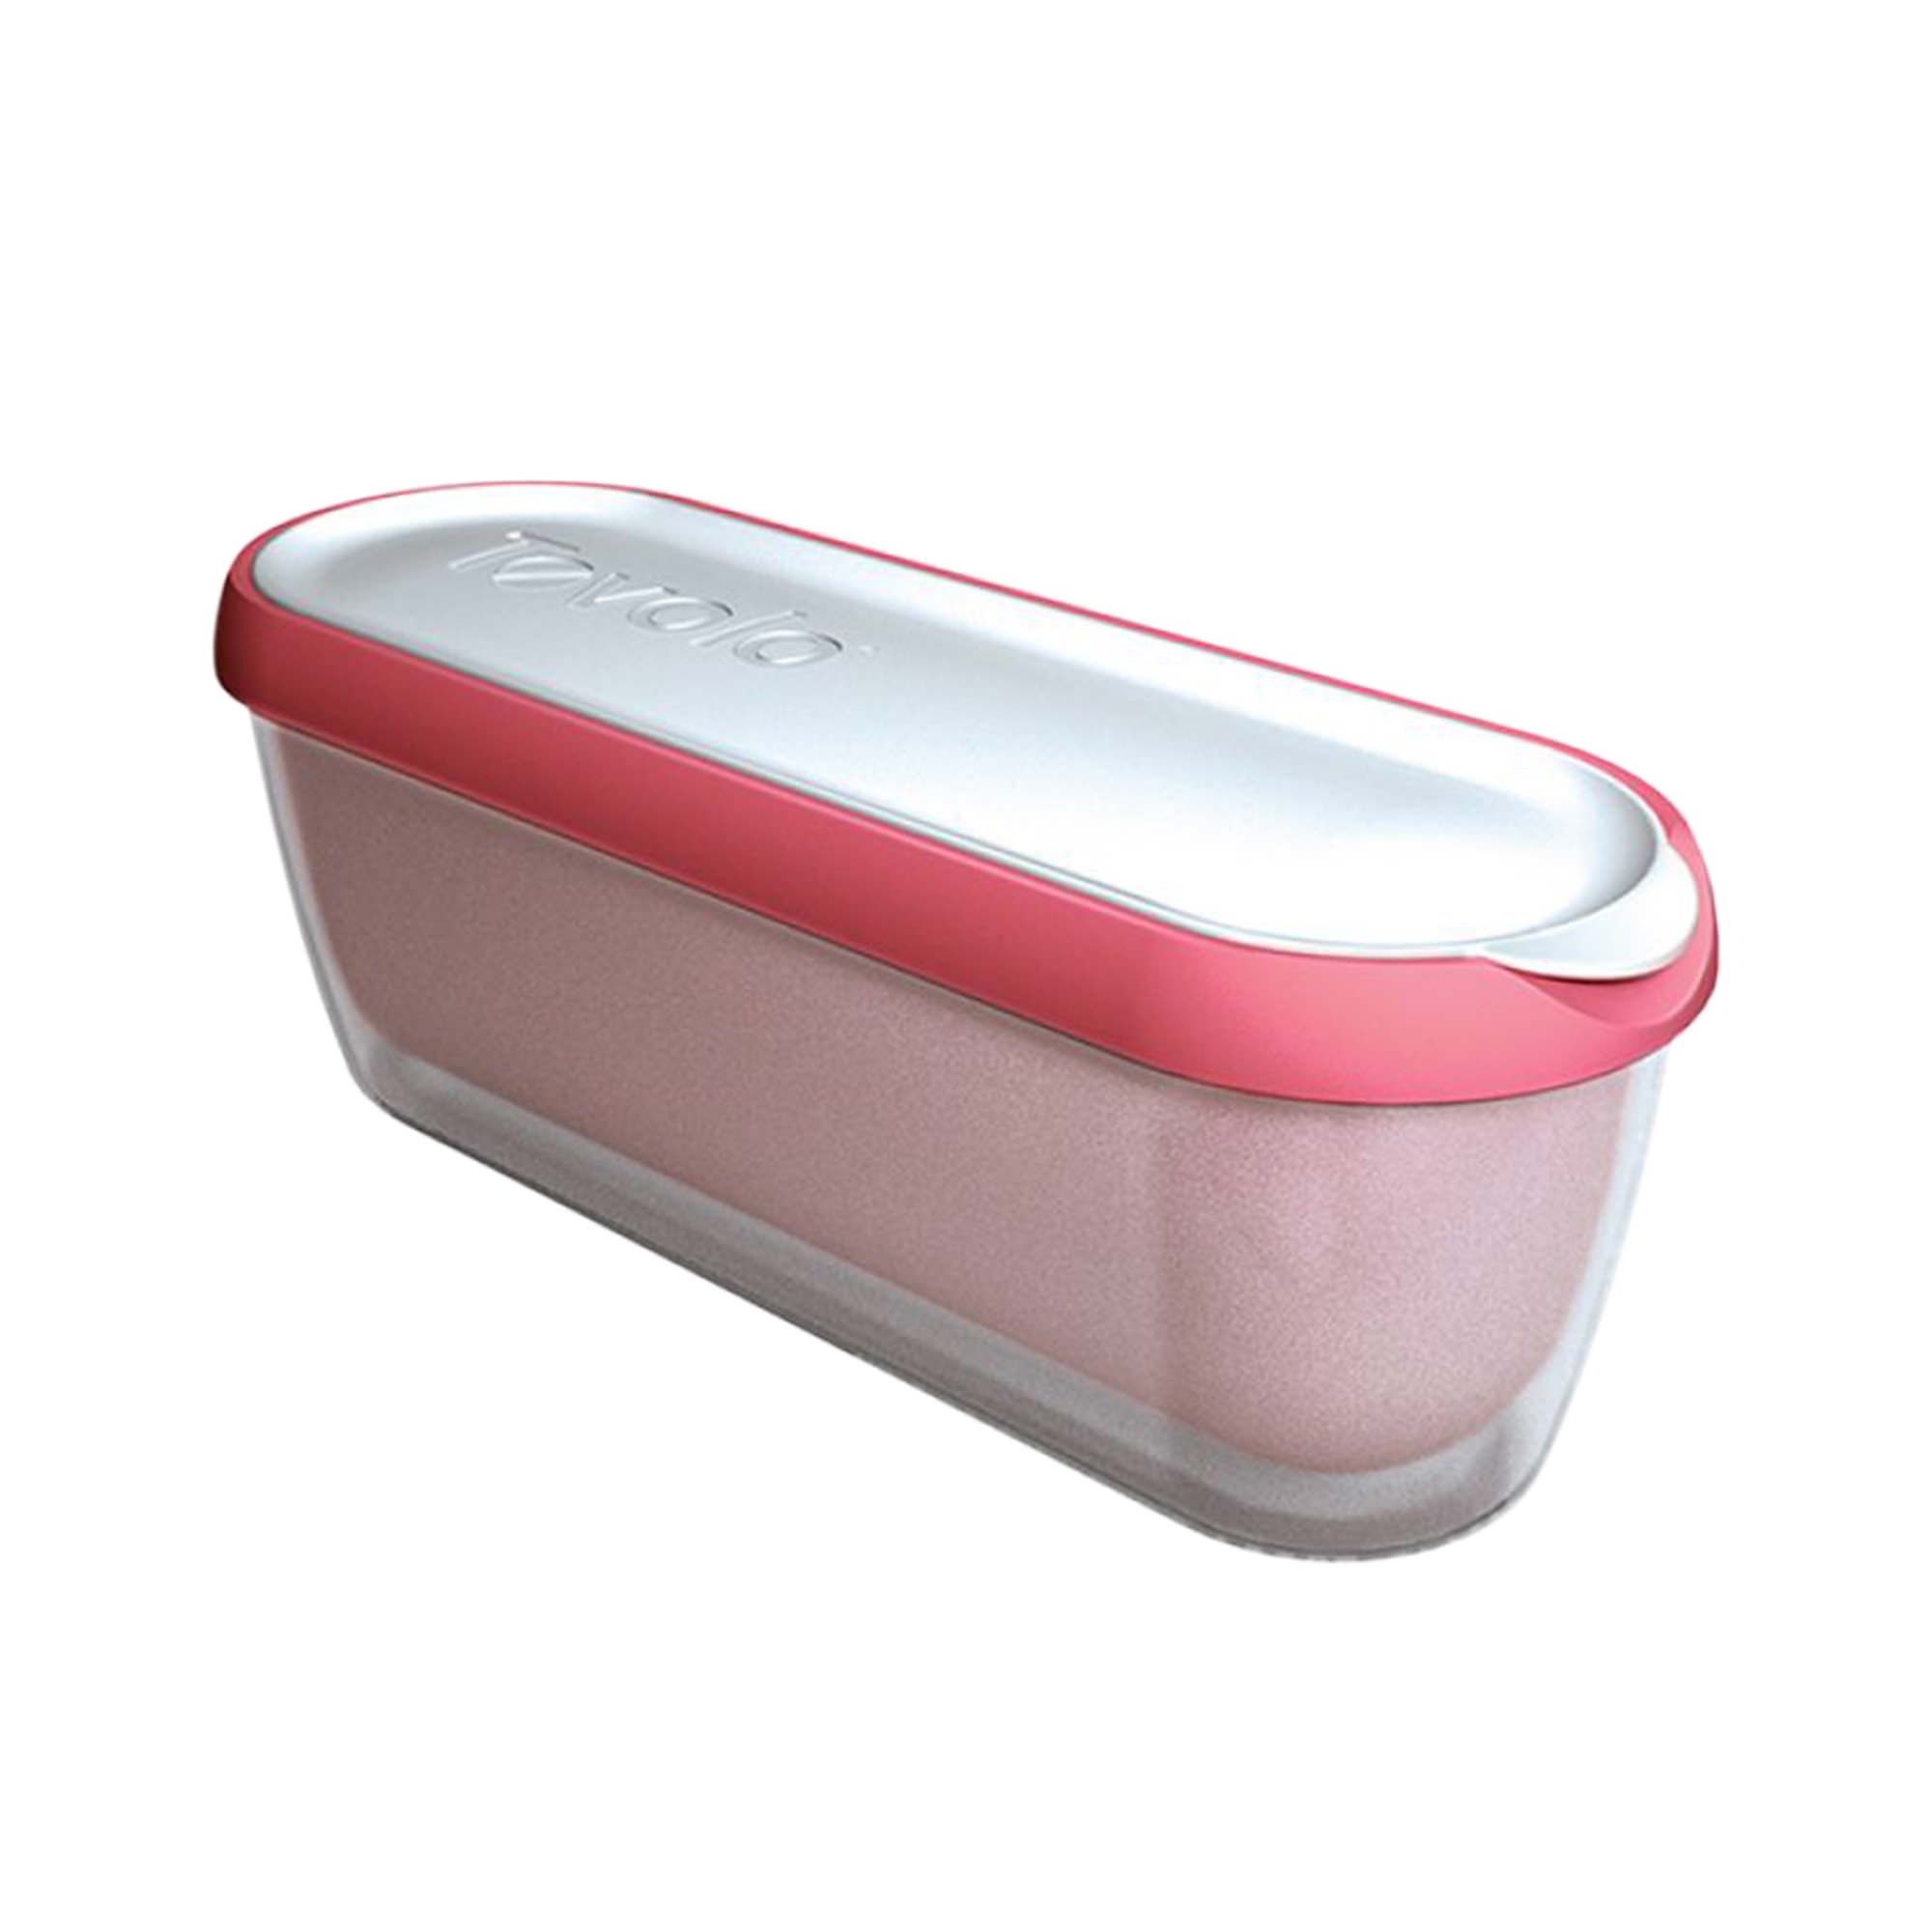 Tovolo Glide-A-Scoop Ice Cream Tub 1.4L Strawberry Image 1